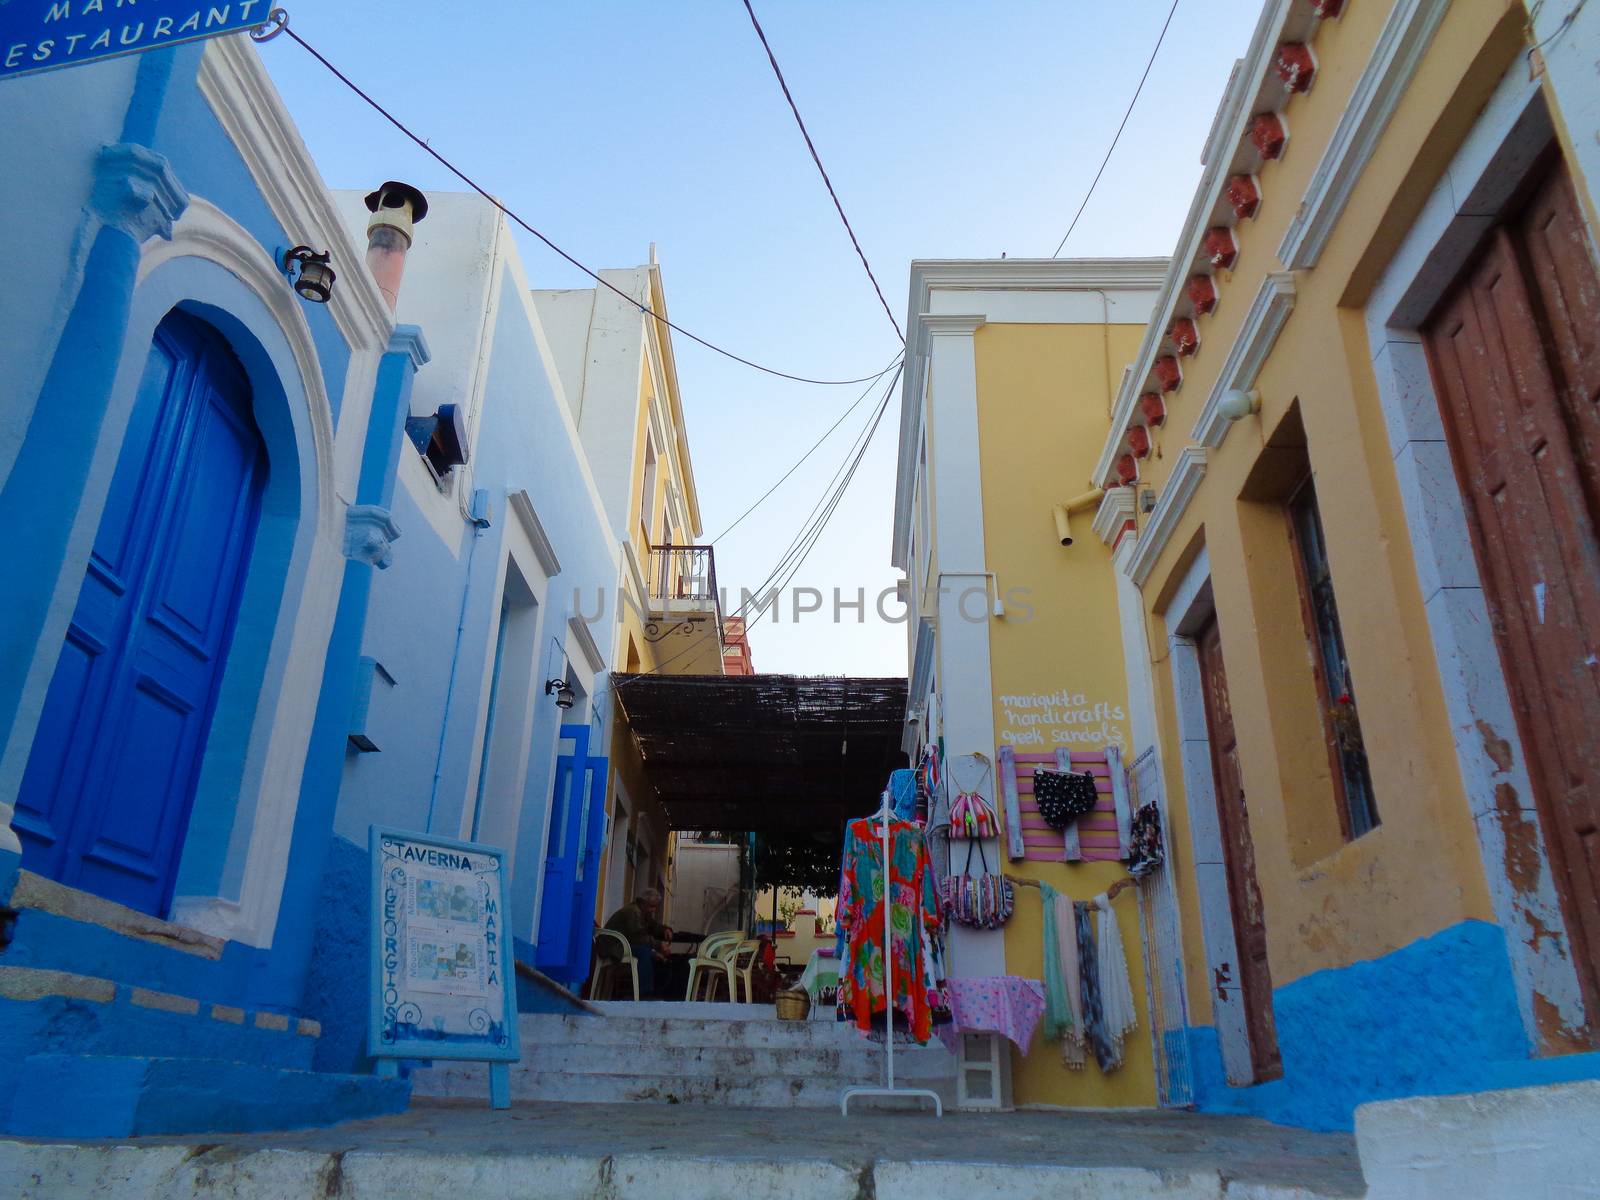 a liitle street in greece